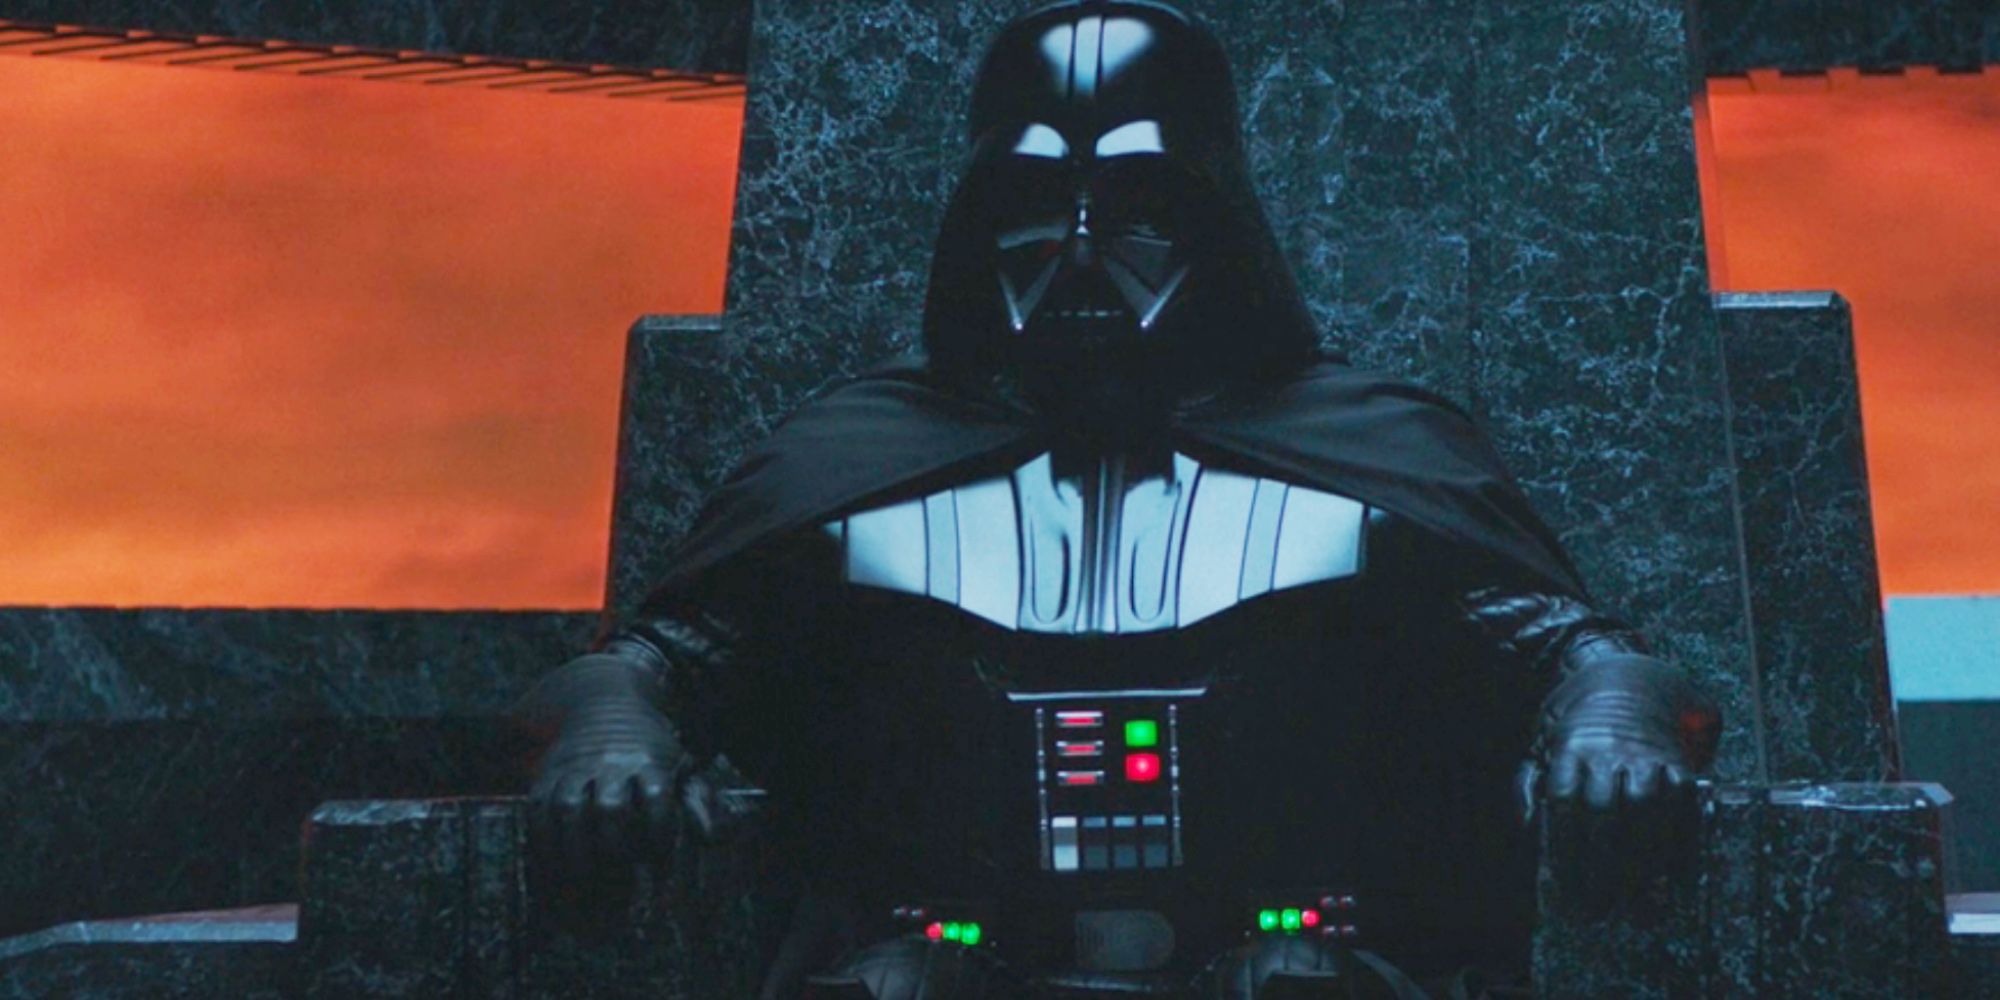 Darth-Vader's-Castle-In-Obi-Wan-Kenobi-Episode-3